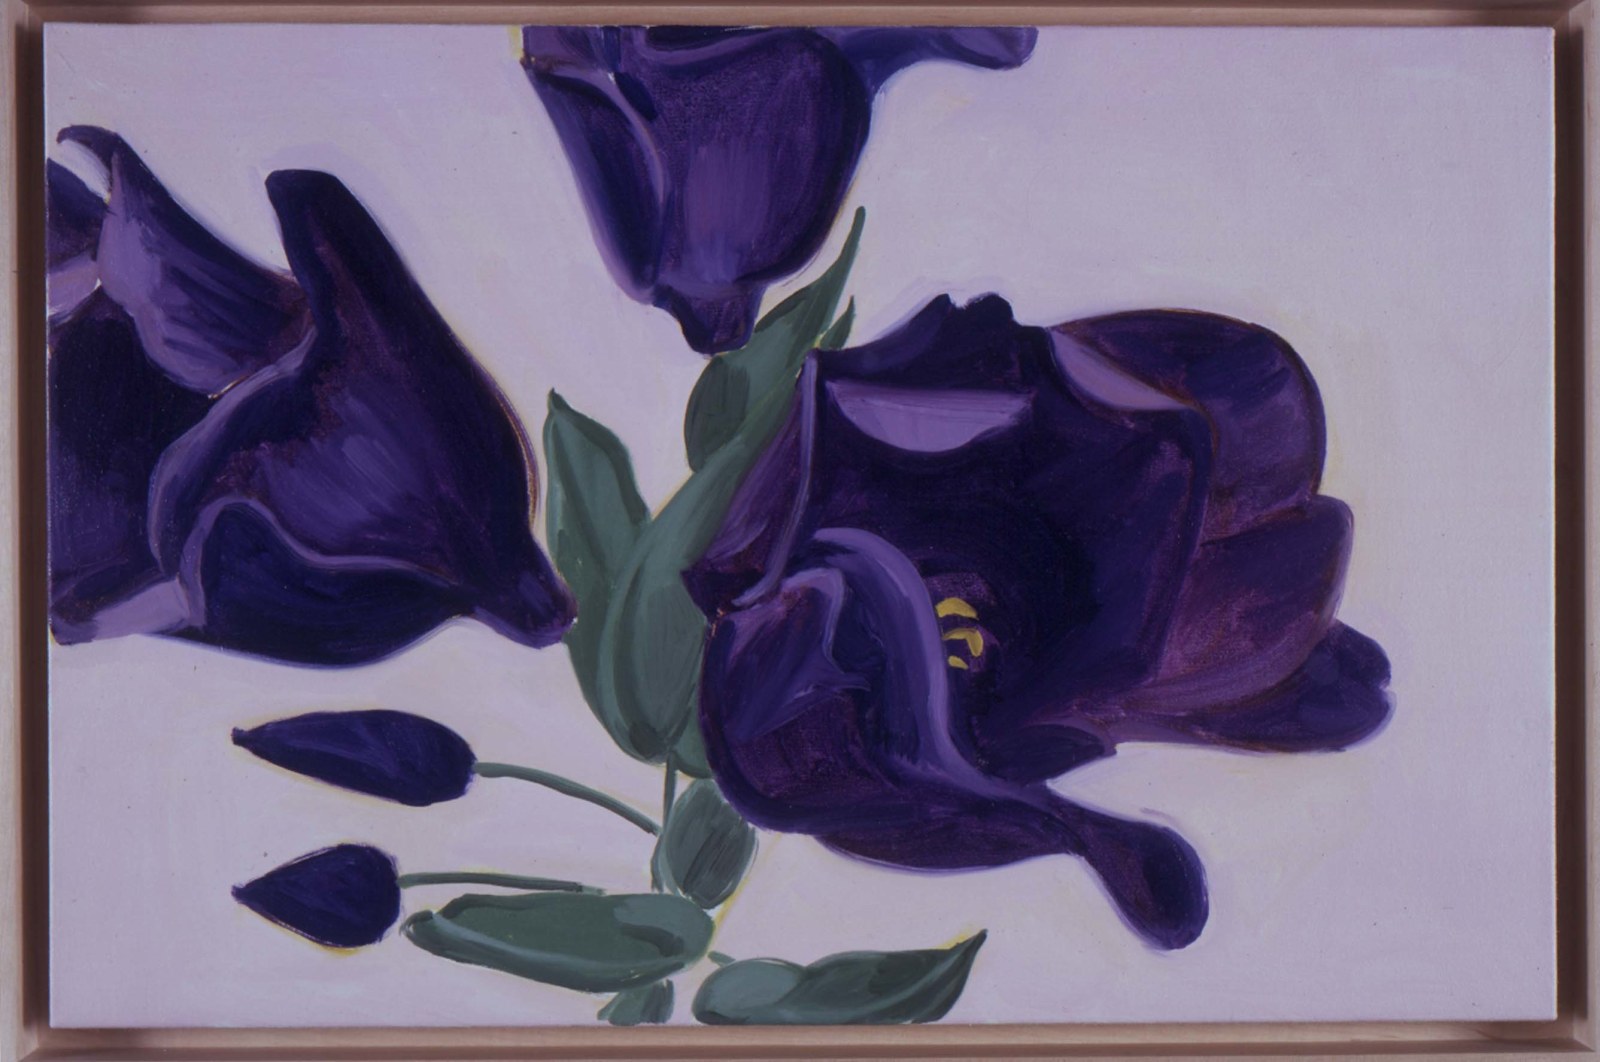 DAVID SALLE, Lisianthus Purple, 2002